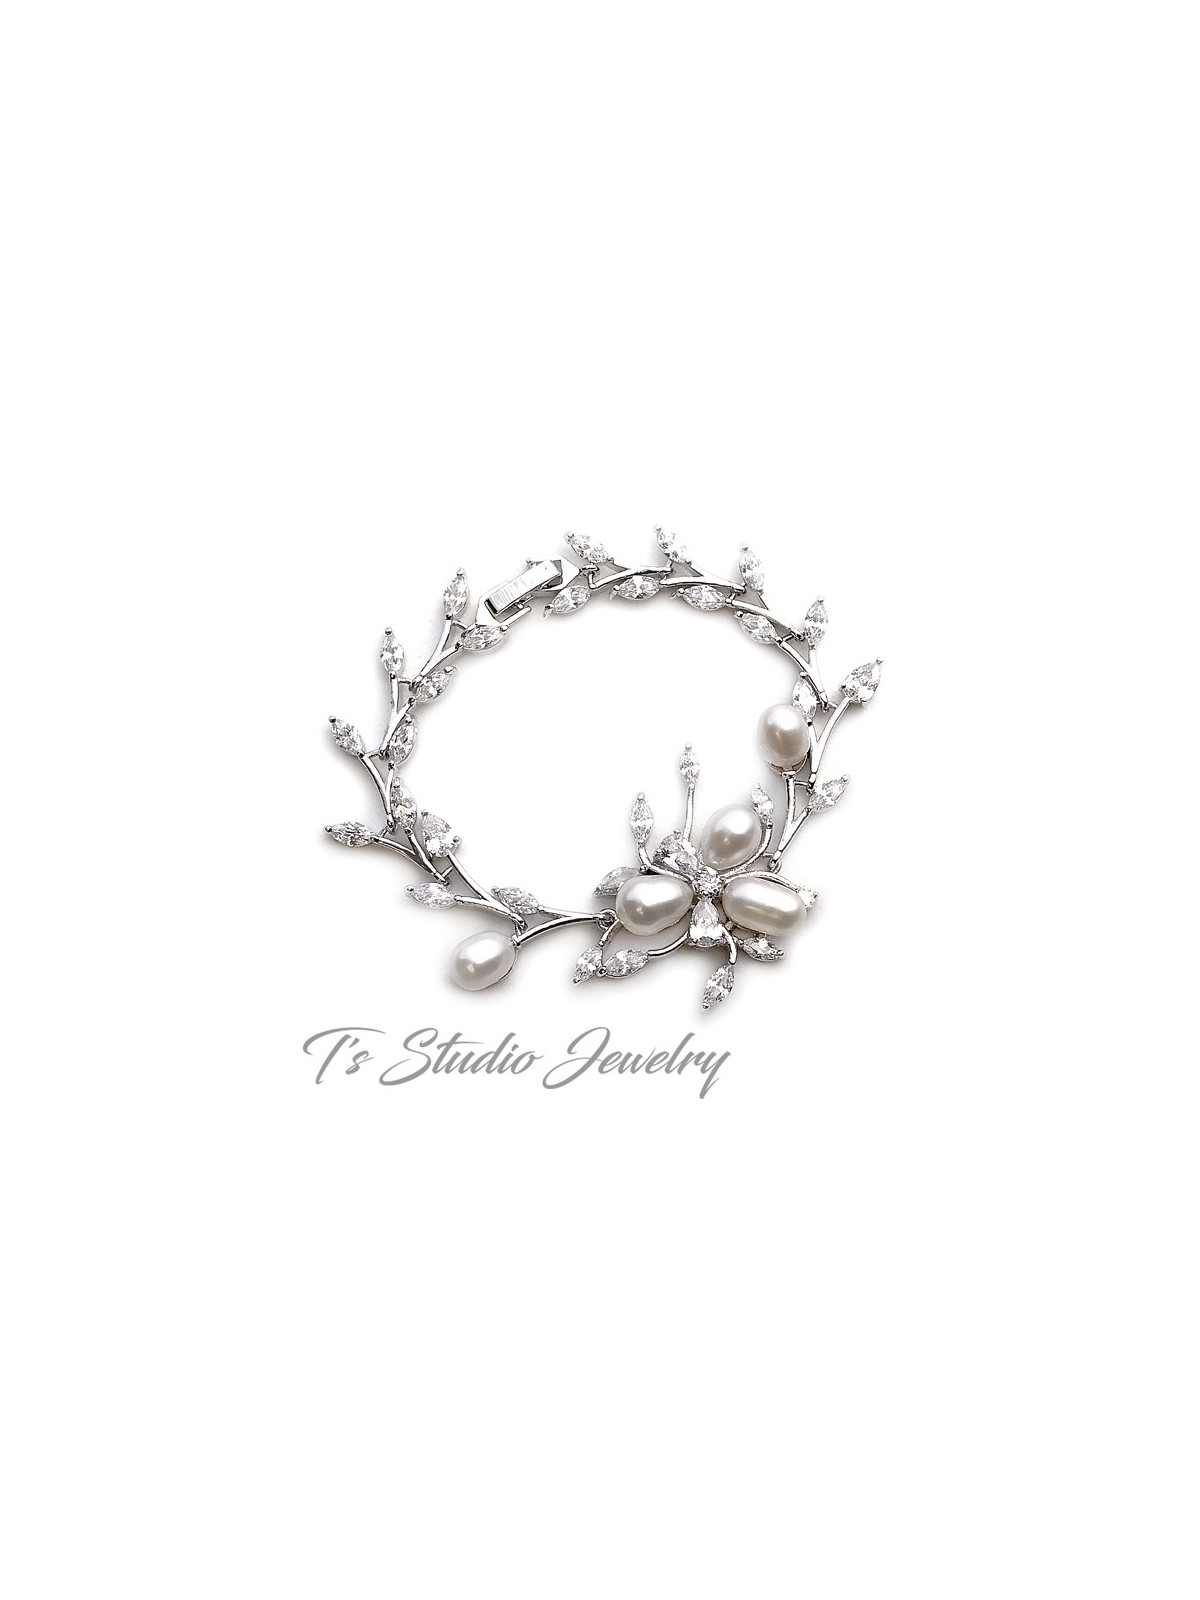 Freshwater Pearl Necklace Earrings Bracelet Bridal Jewelry Set